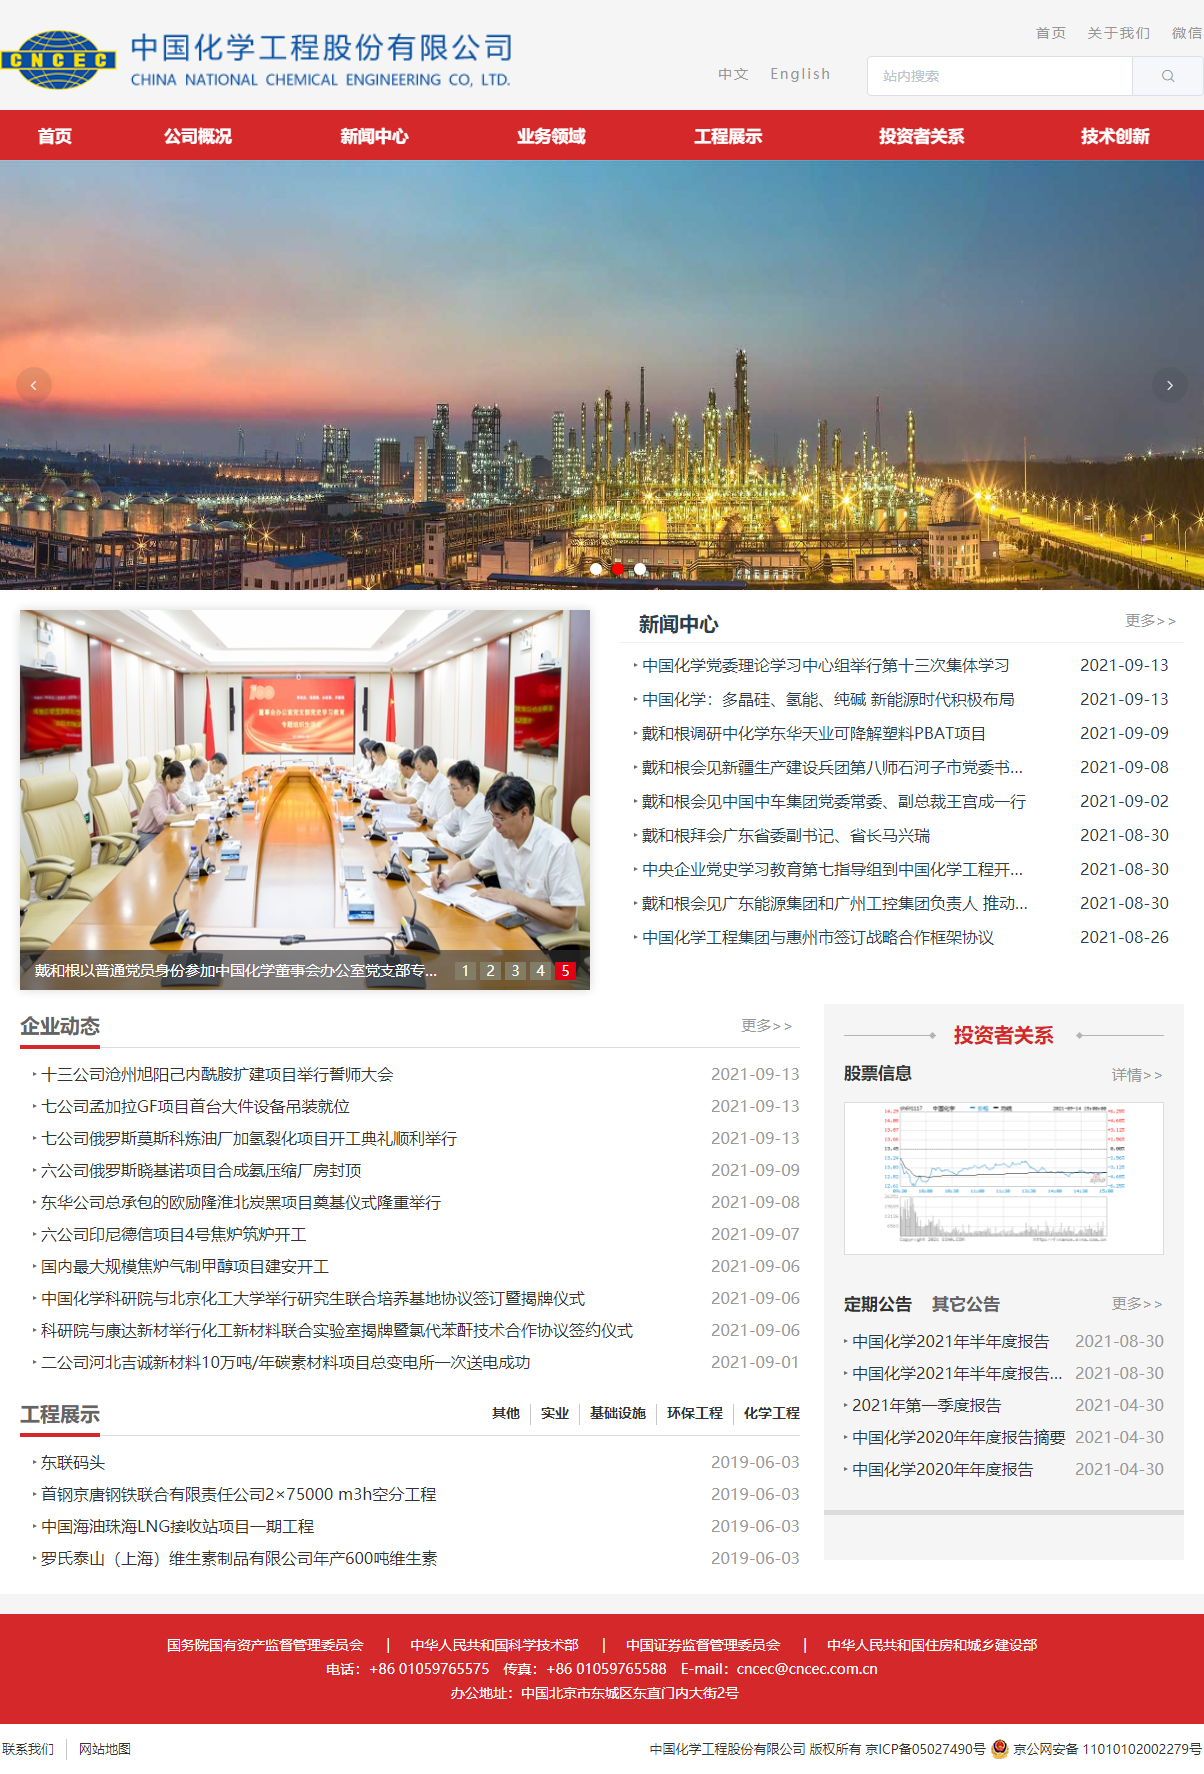 中国化学工程股份有限公司网站案例